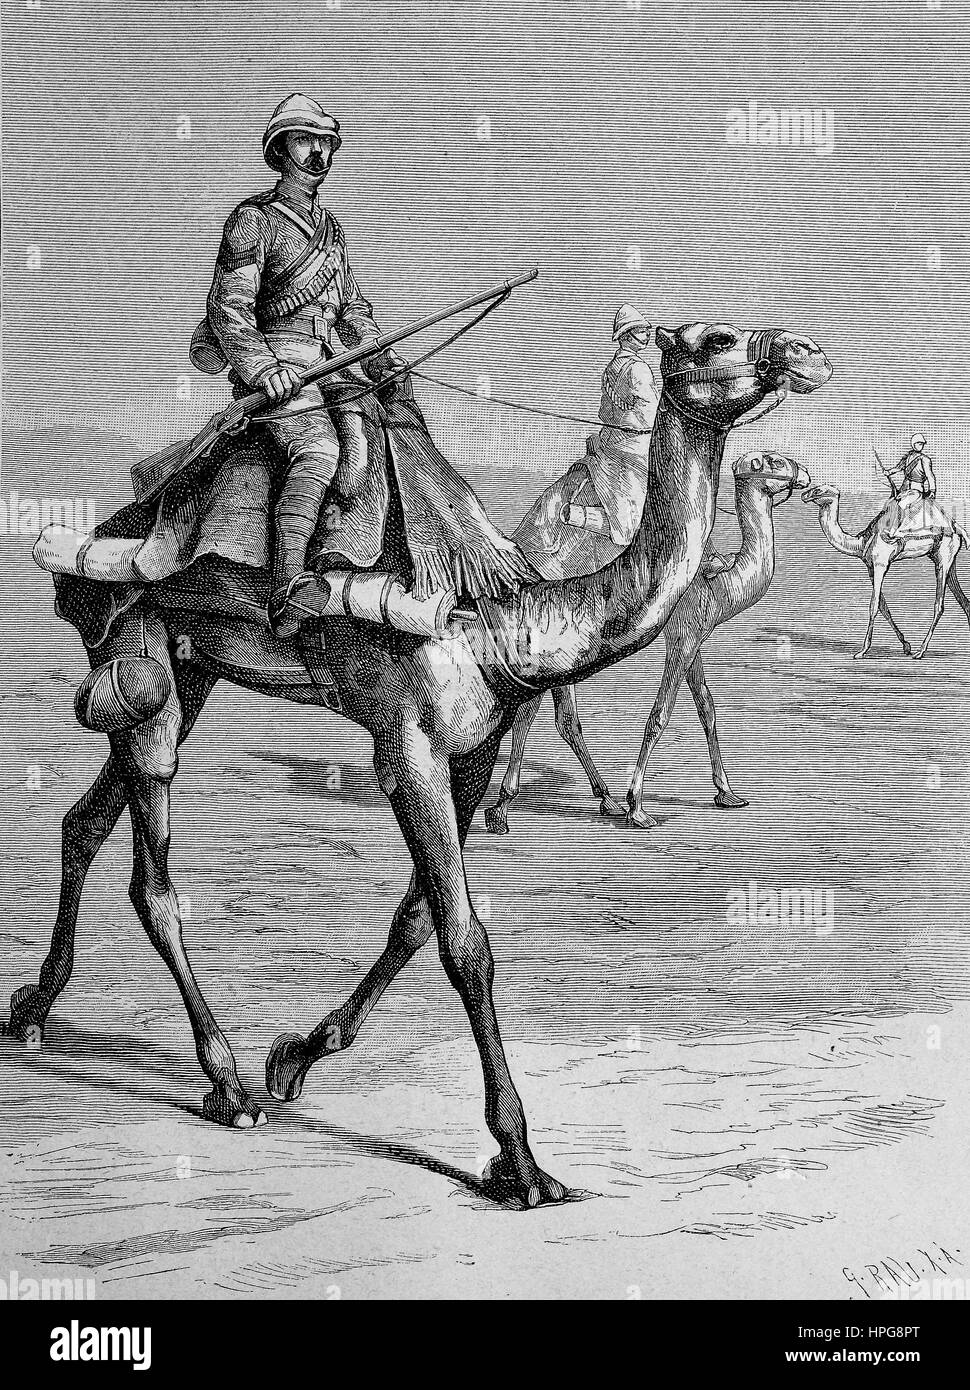 Englische Kamelreiter in Ägypten, Pinakotheken Kamelreiter in? Gypten, digital verbesserte Wiedergabe von einem Holzschnitt aus dem Jahr 1885 Stockfoto